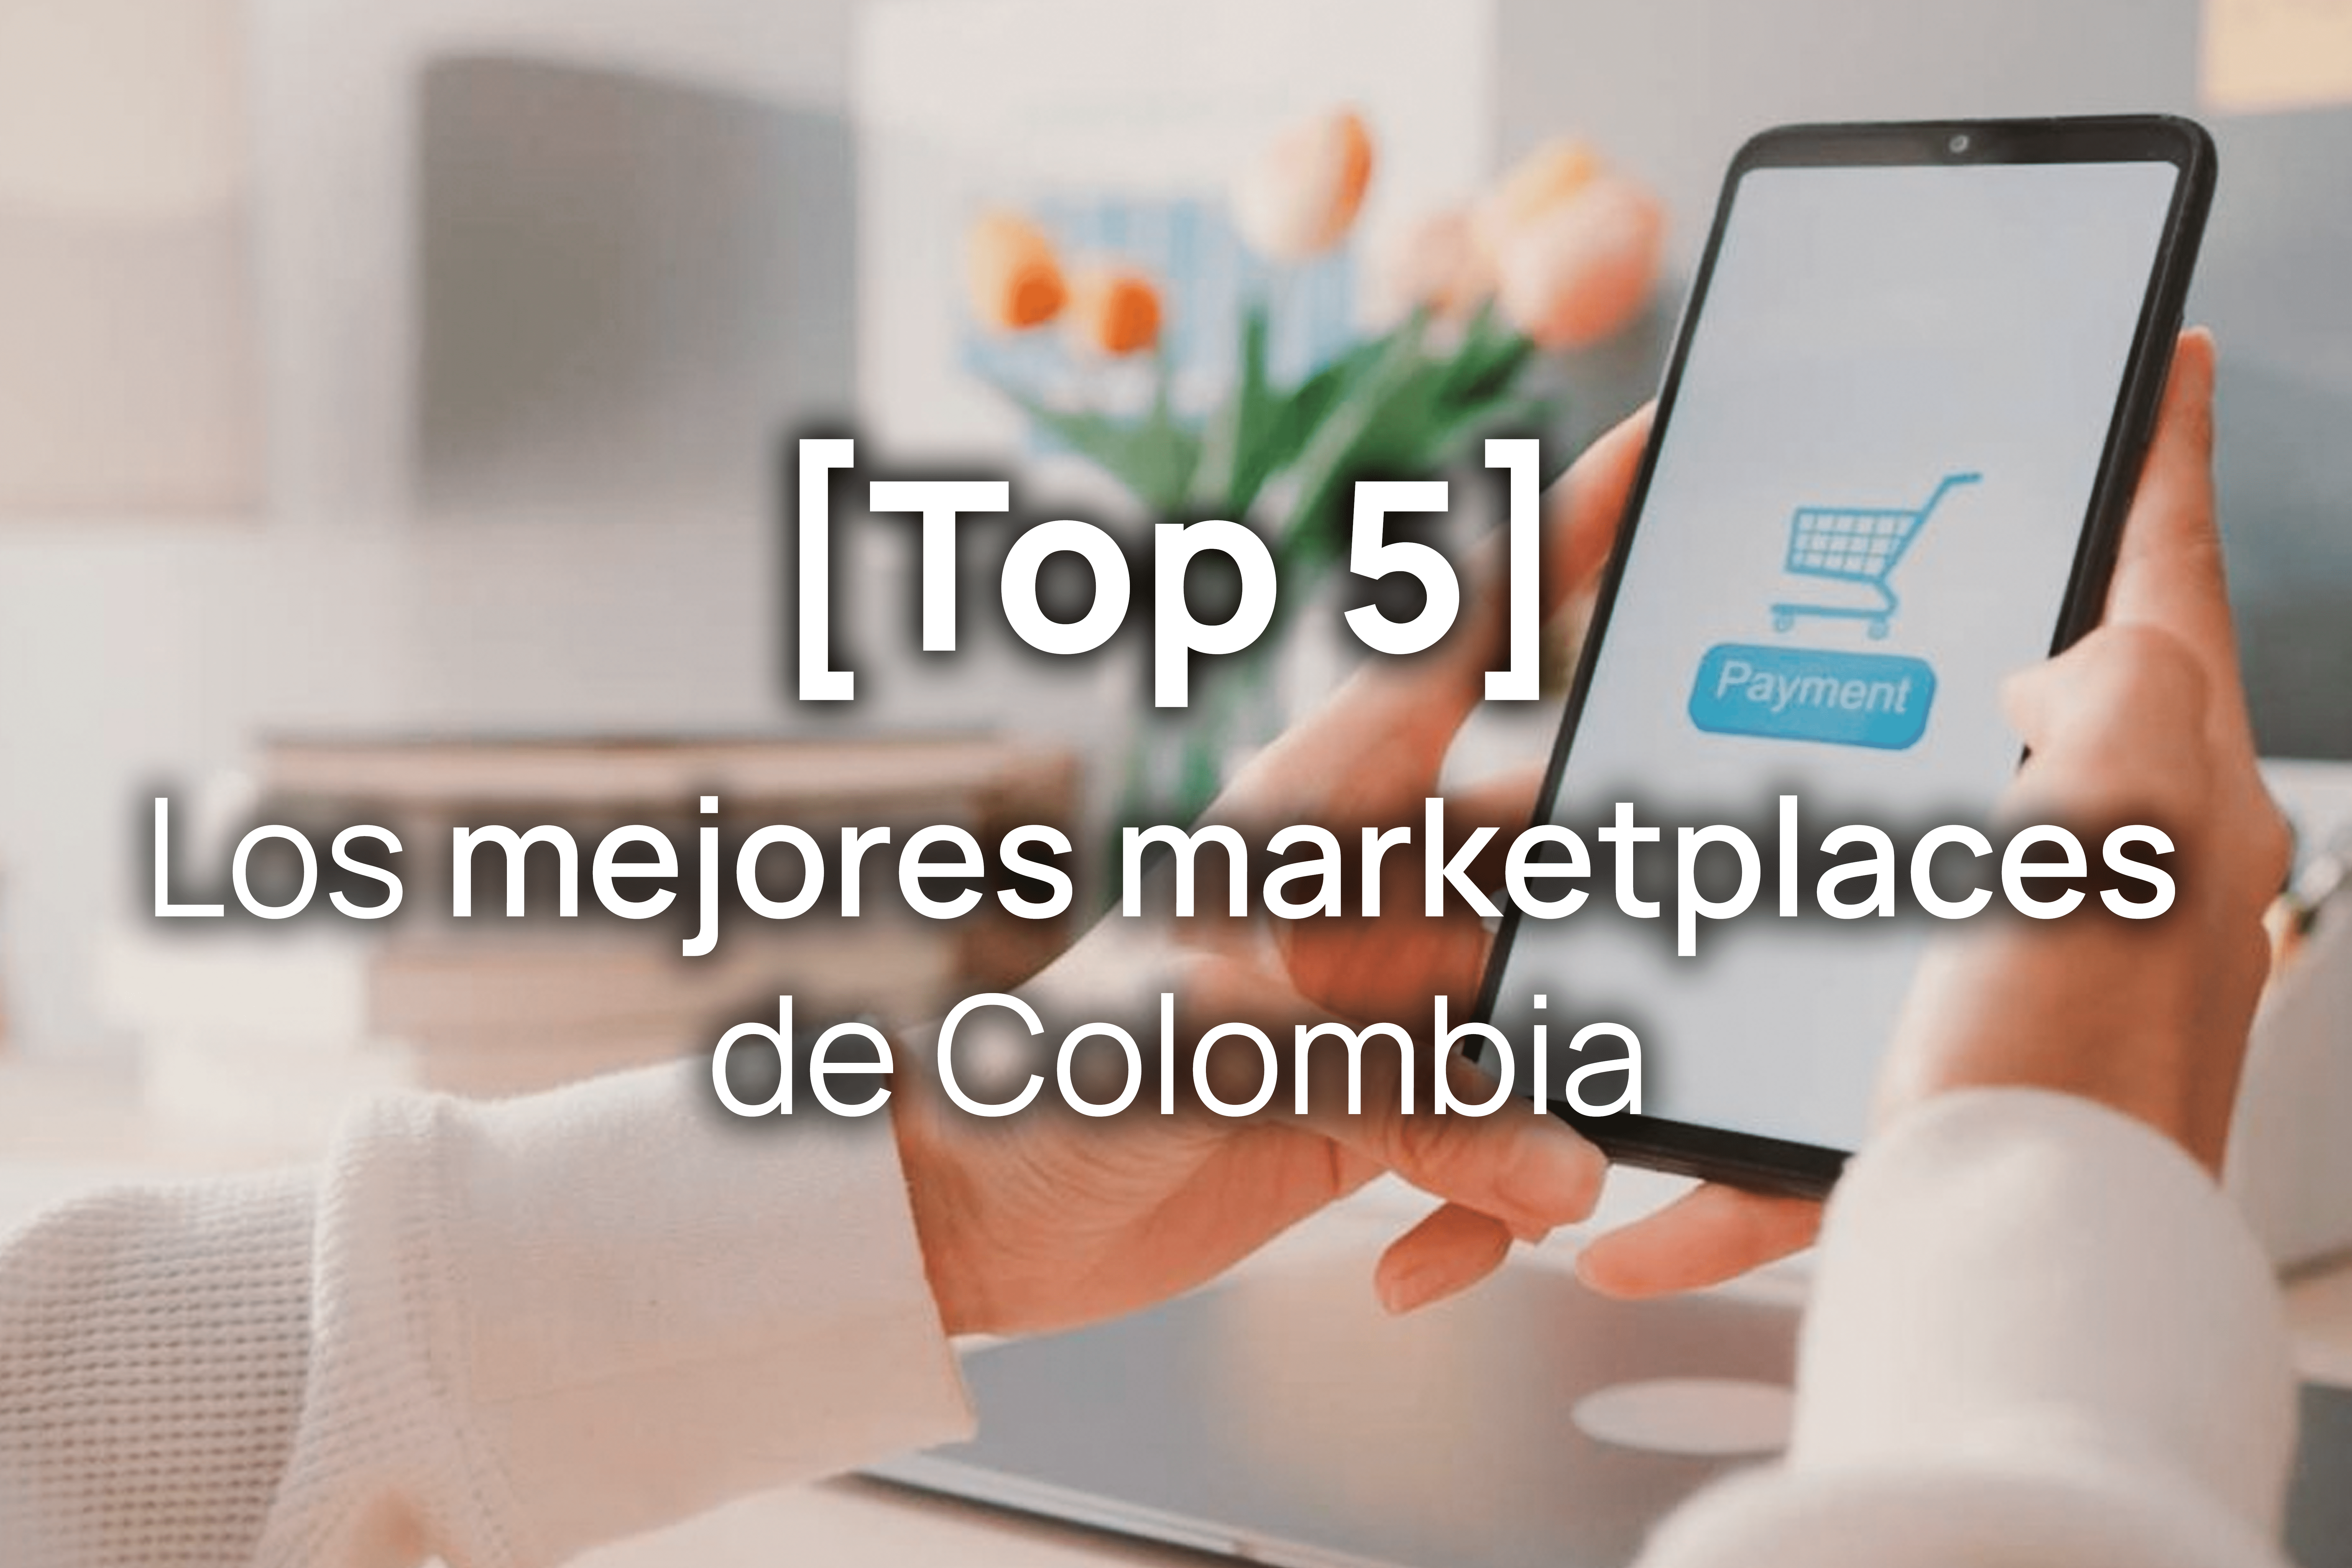 Los mejores marketplaces de Colombia